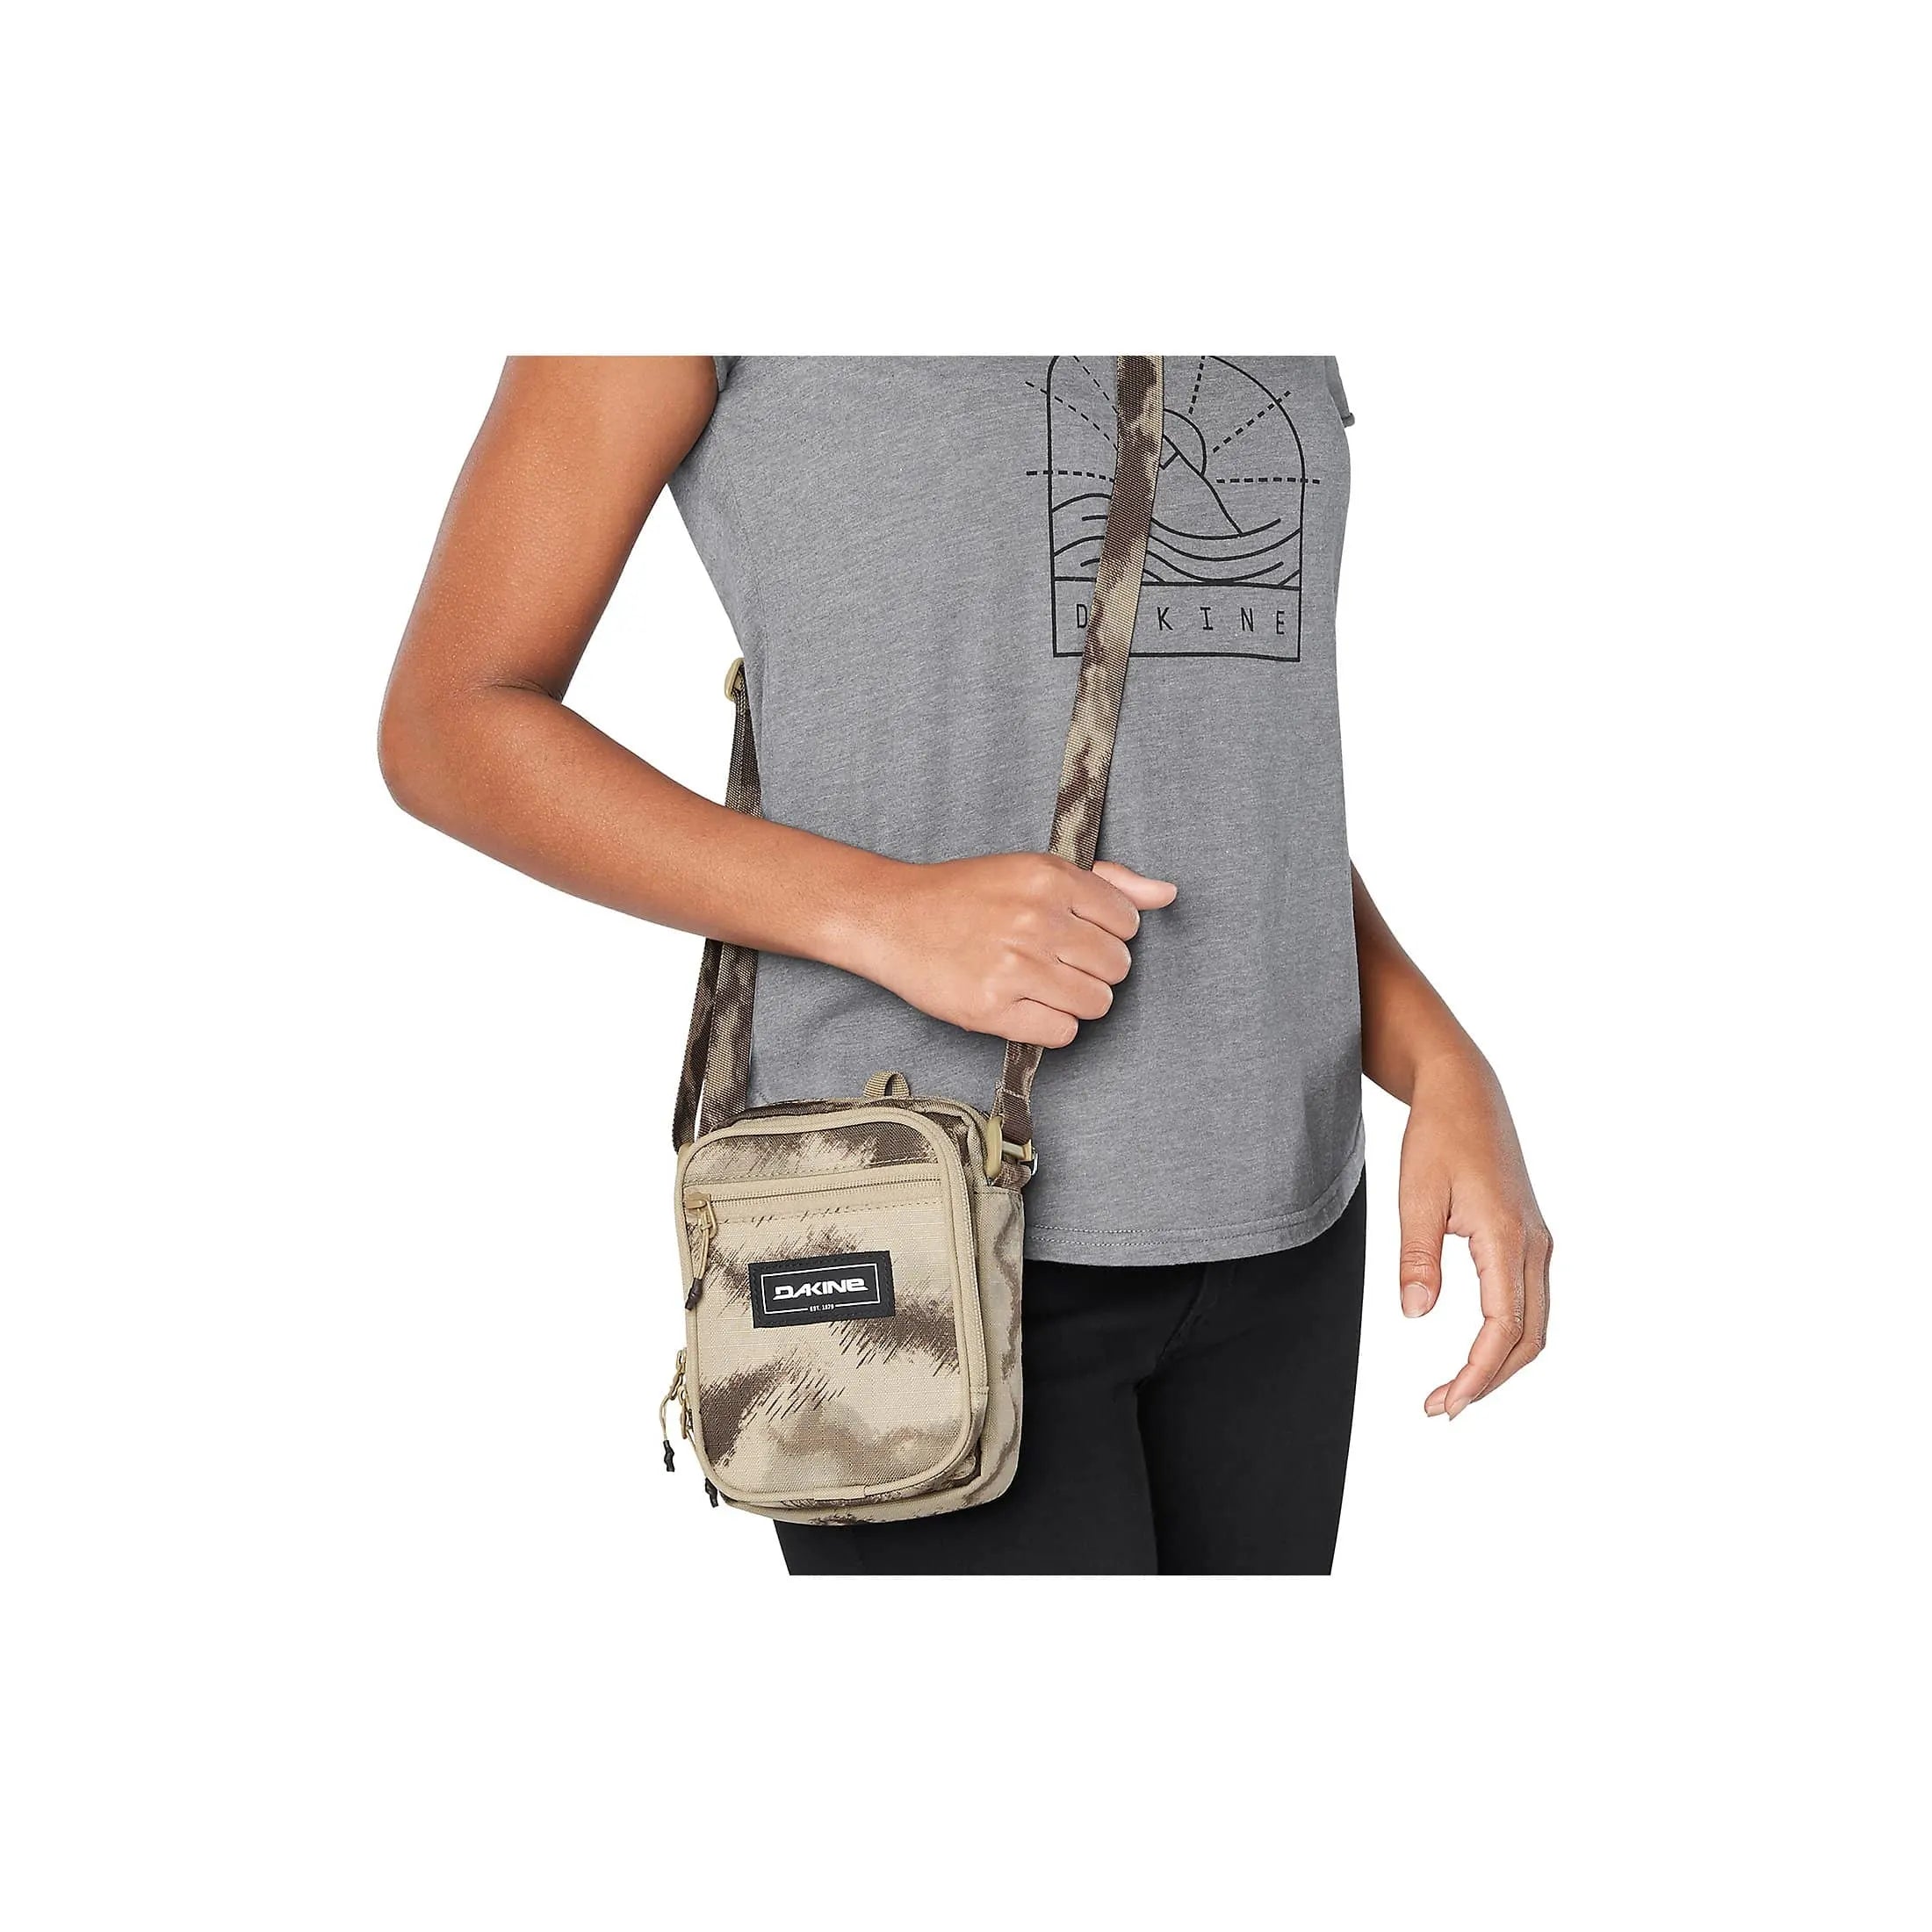 Dakine Packs & Bags Field Bag Handbag 18 cm - rincon